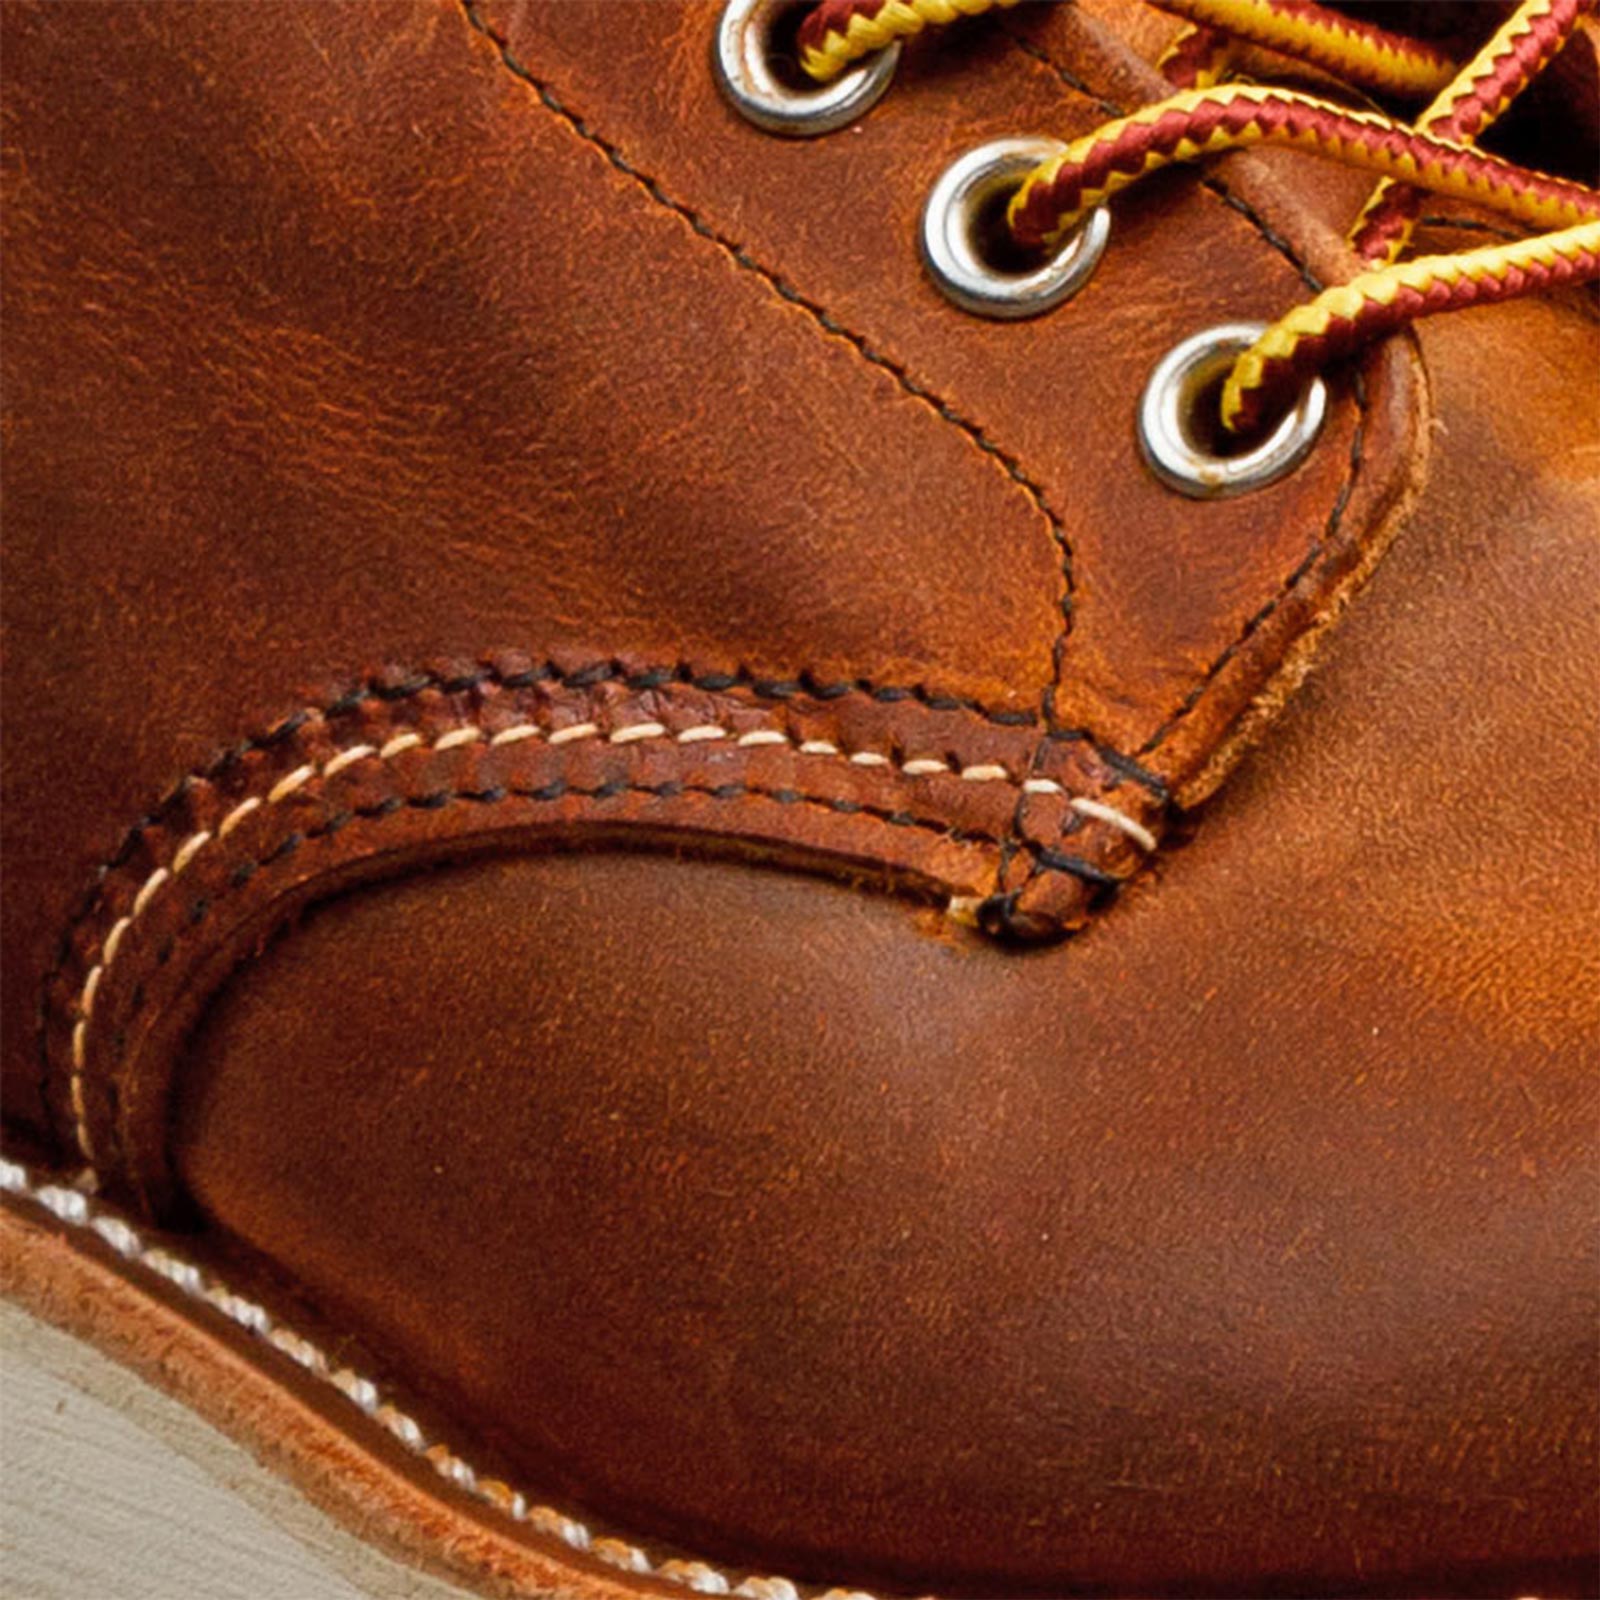 Comment nettoyer et entretenir ses chaussures en cuir